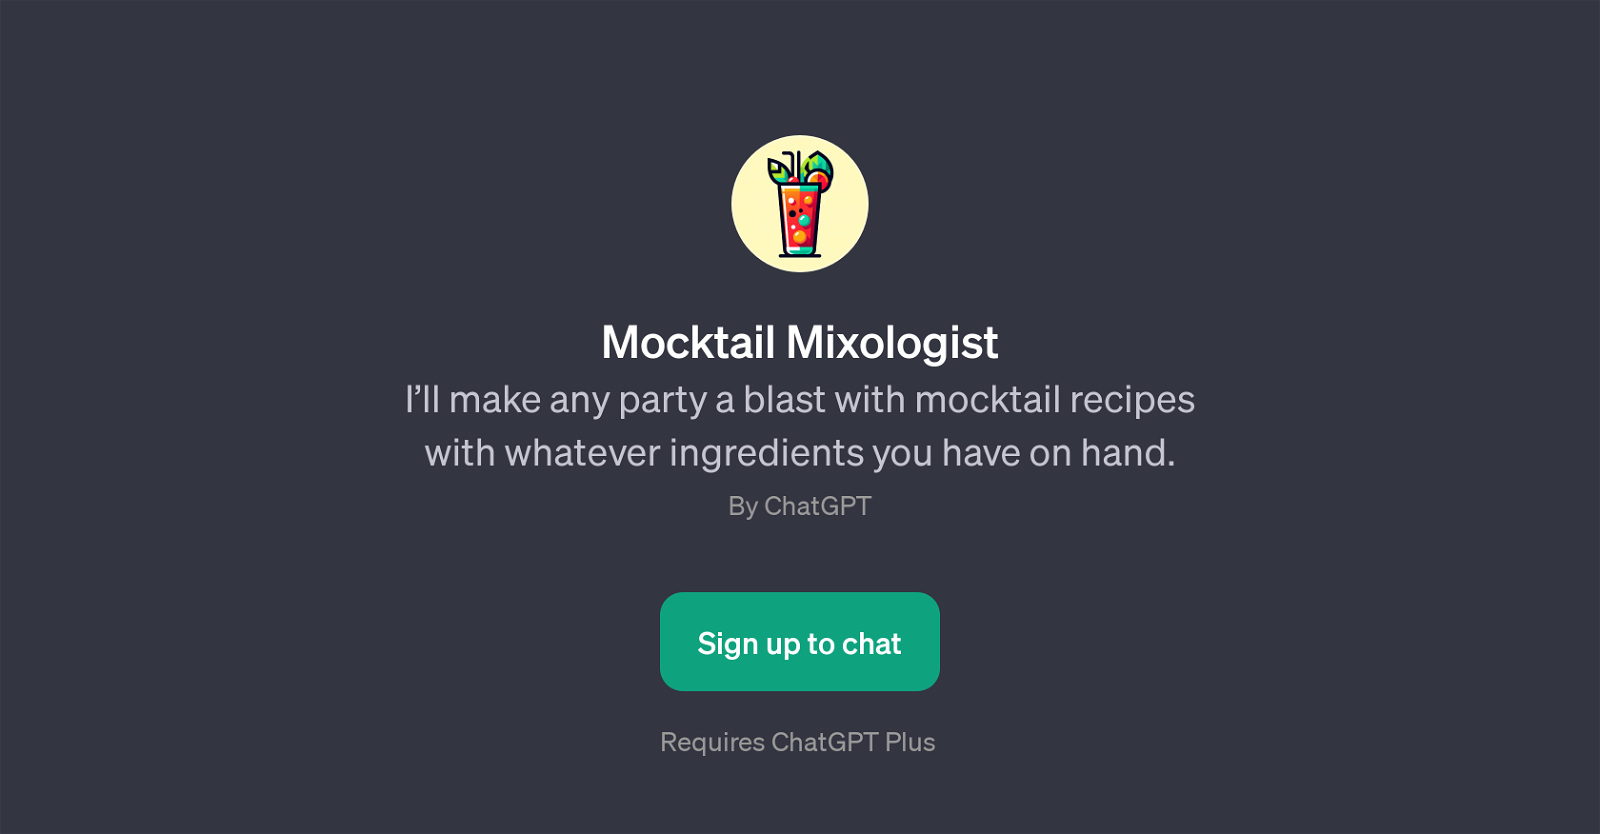 Mocktail Mixologist website